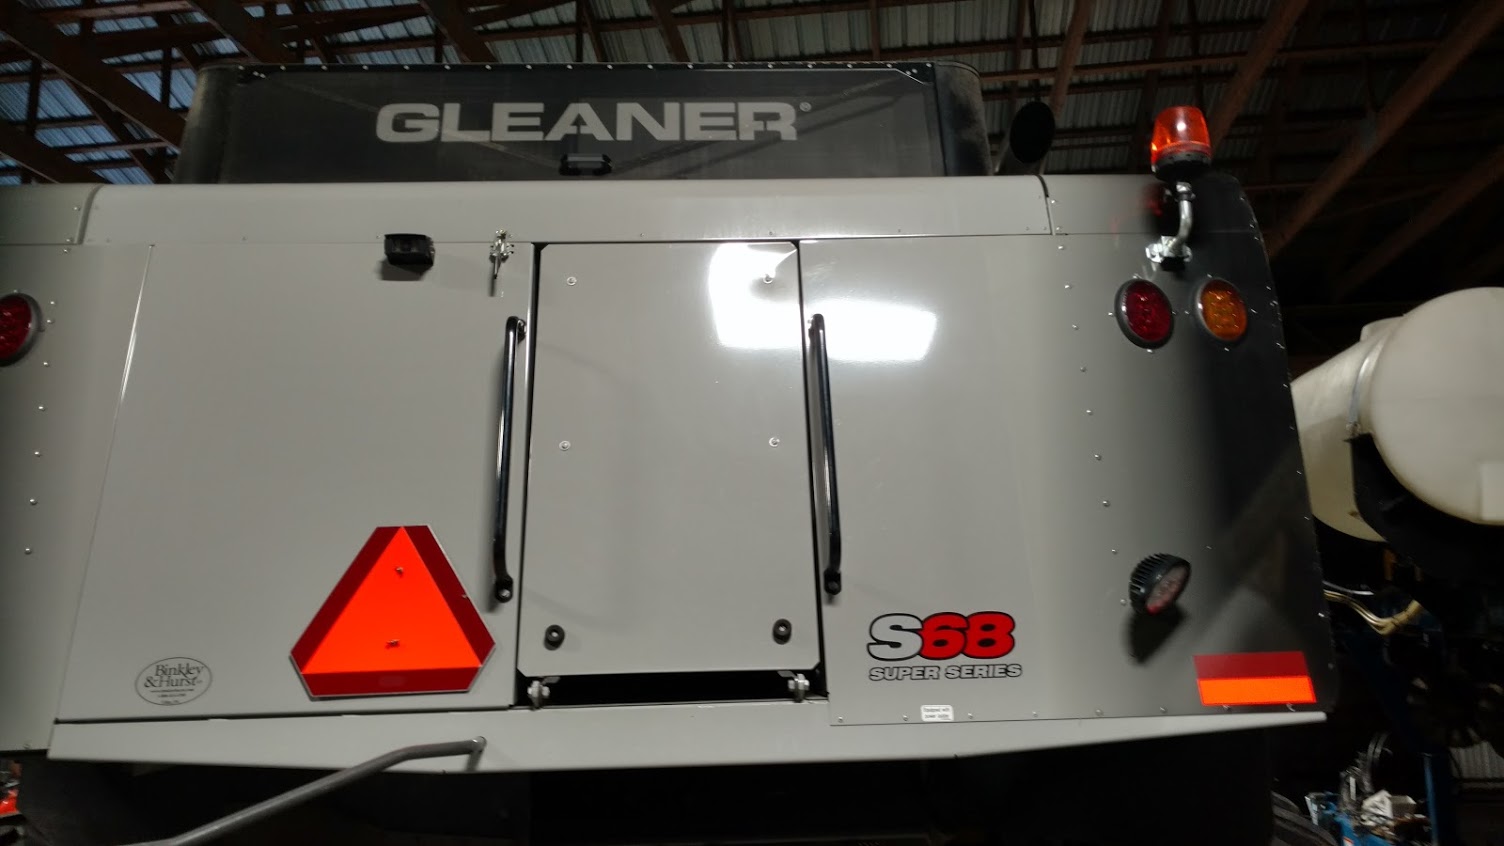 Gleaner S68